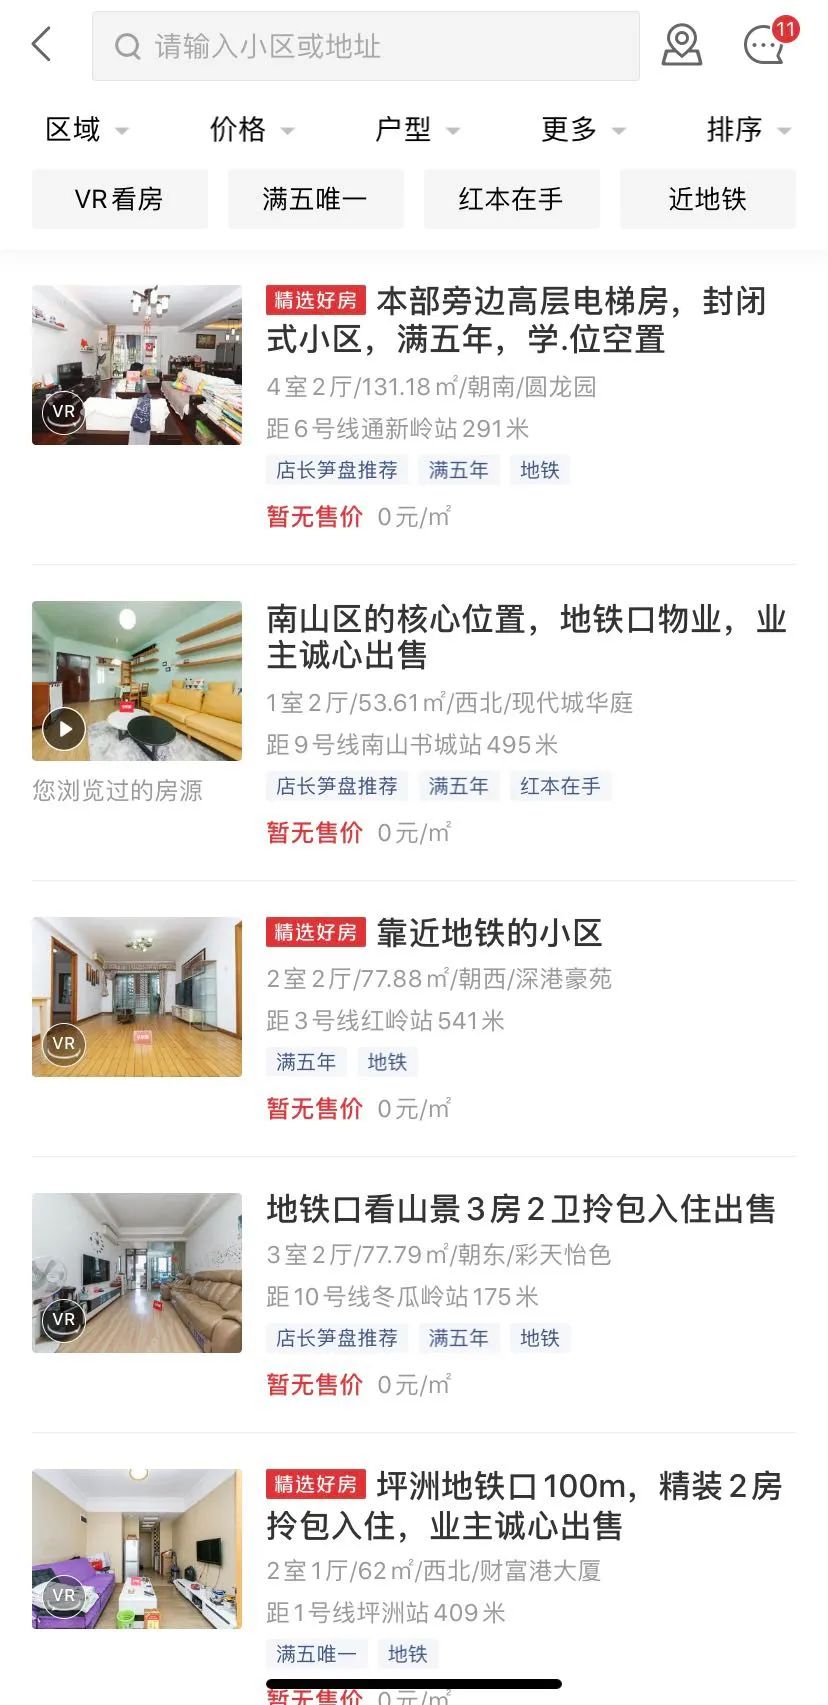 ▲乐有家APP上，深圳二手房房源显示为“暂无售价”。